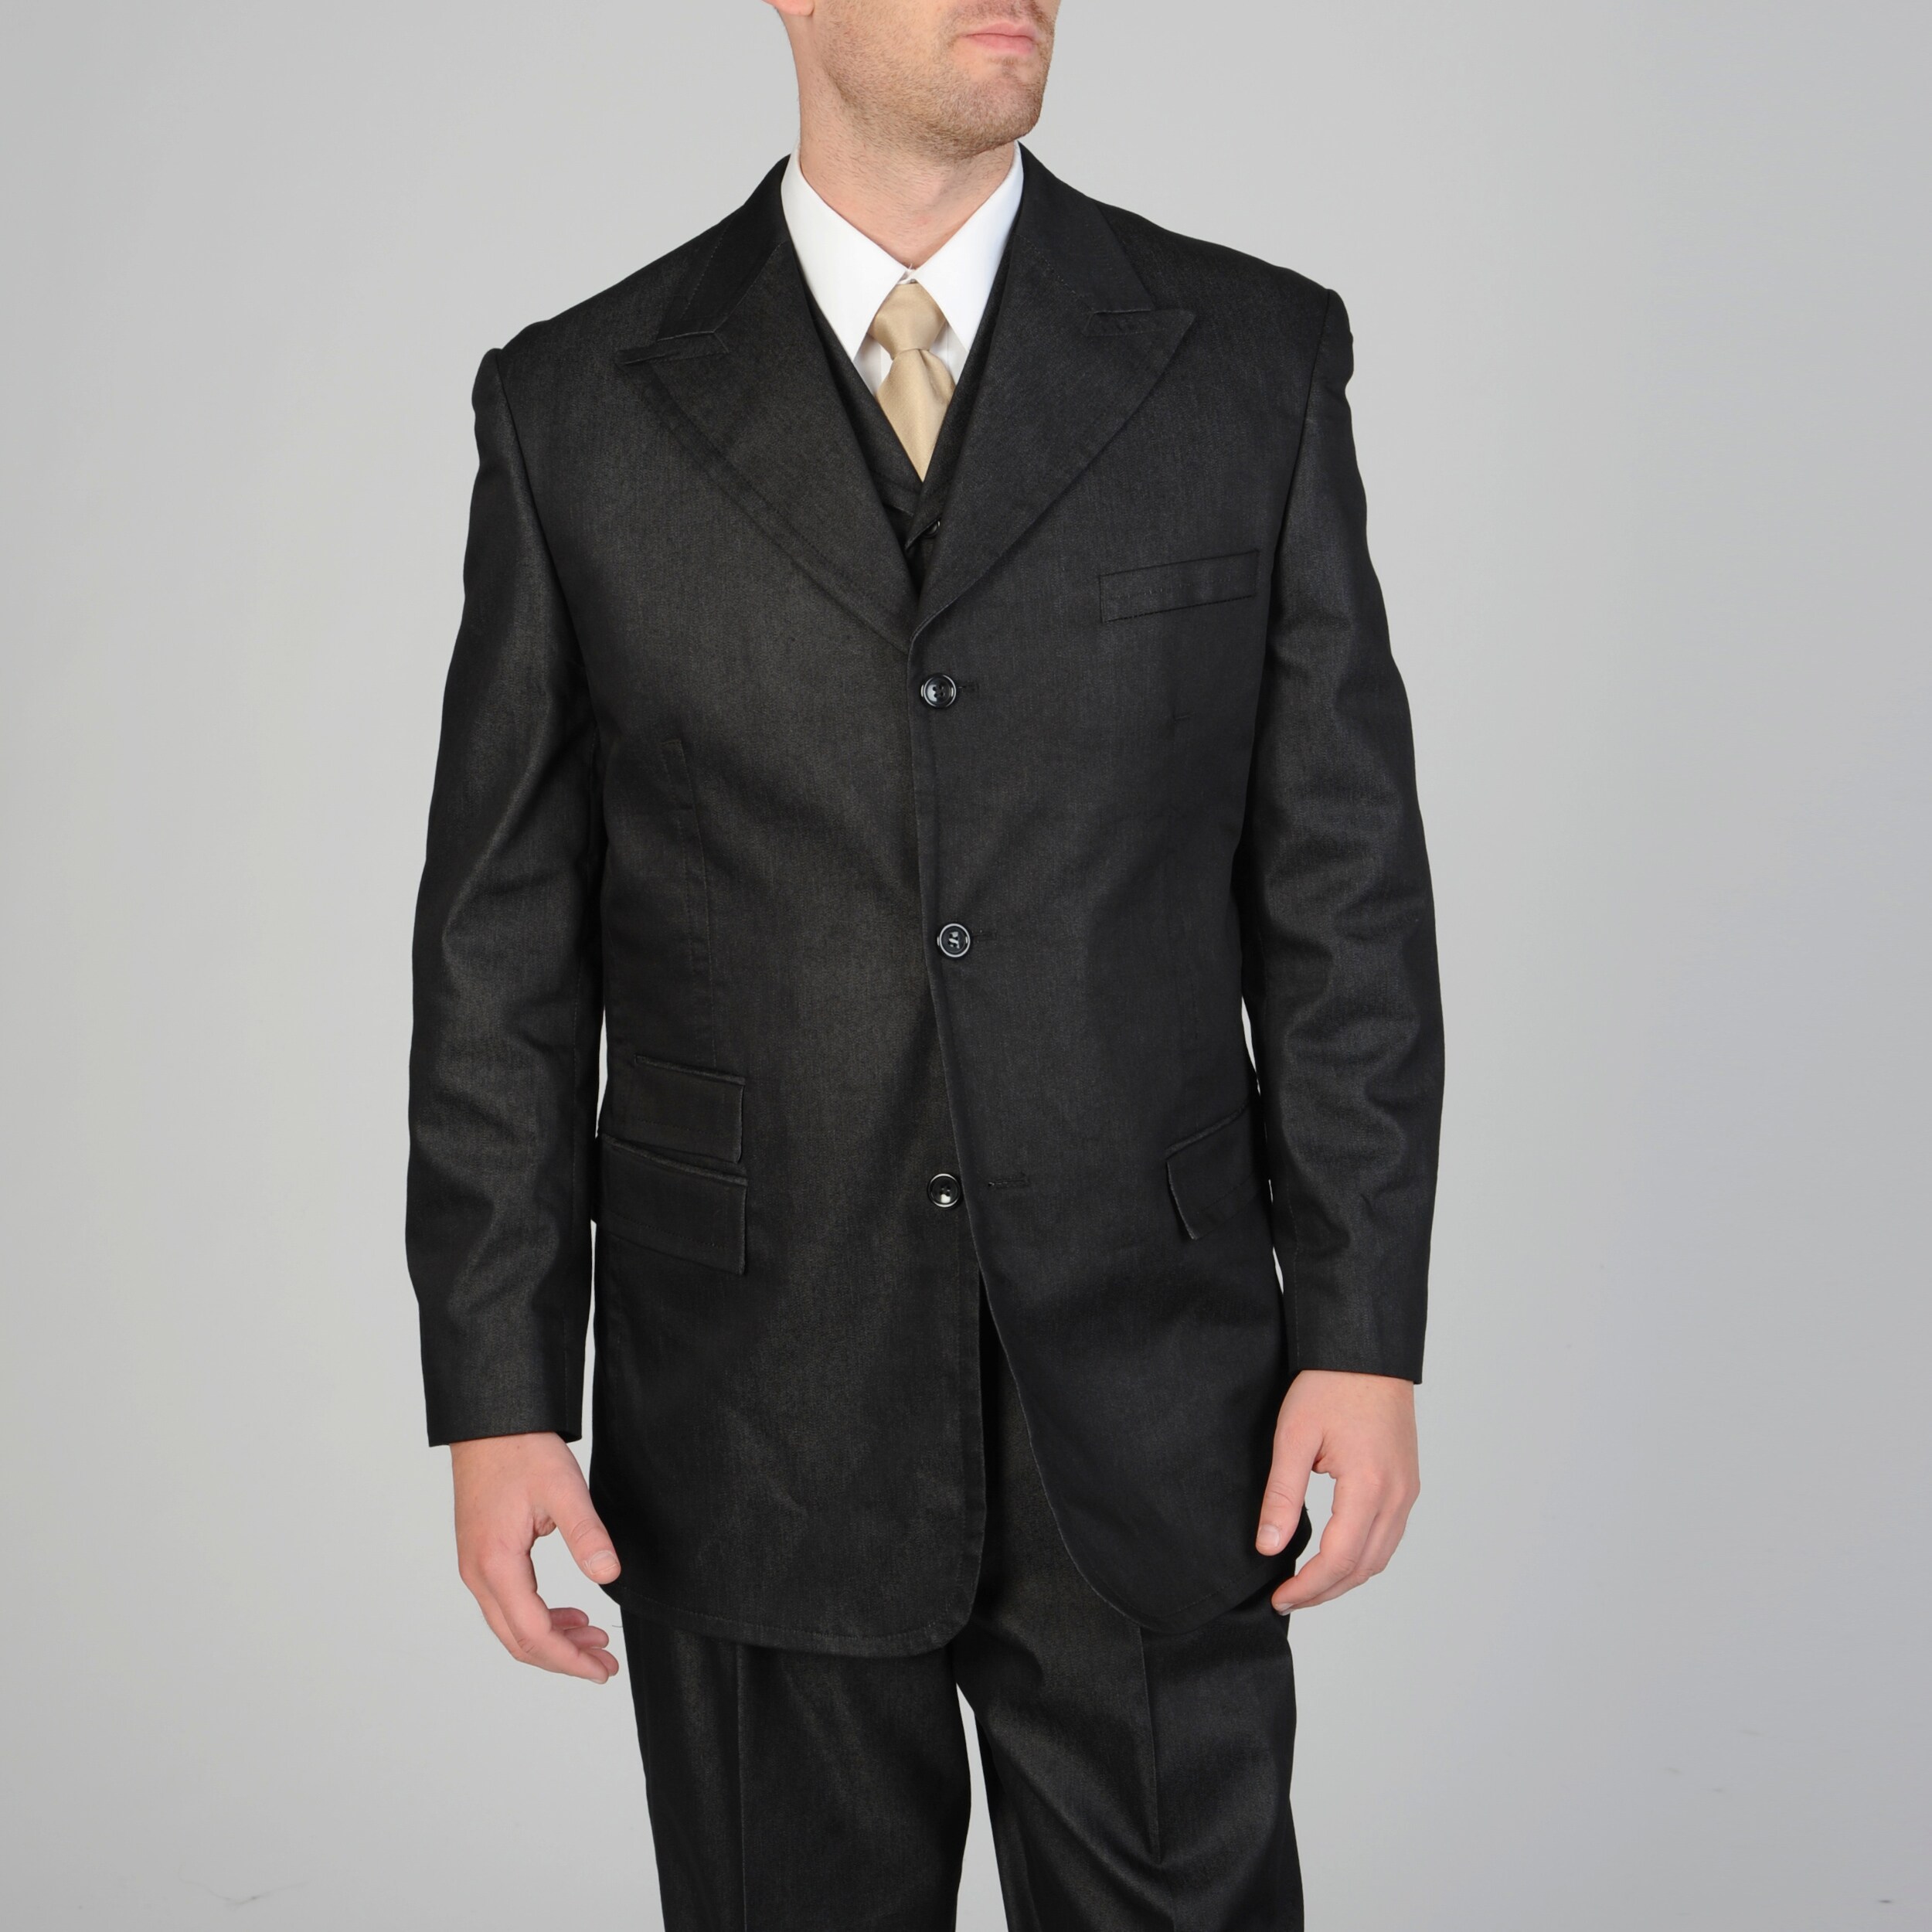 Caravelli Fusion Mens 3 piece Black Vested Suit